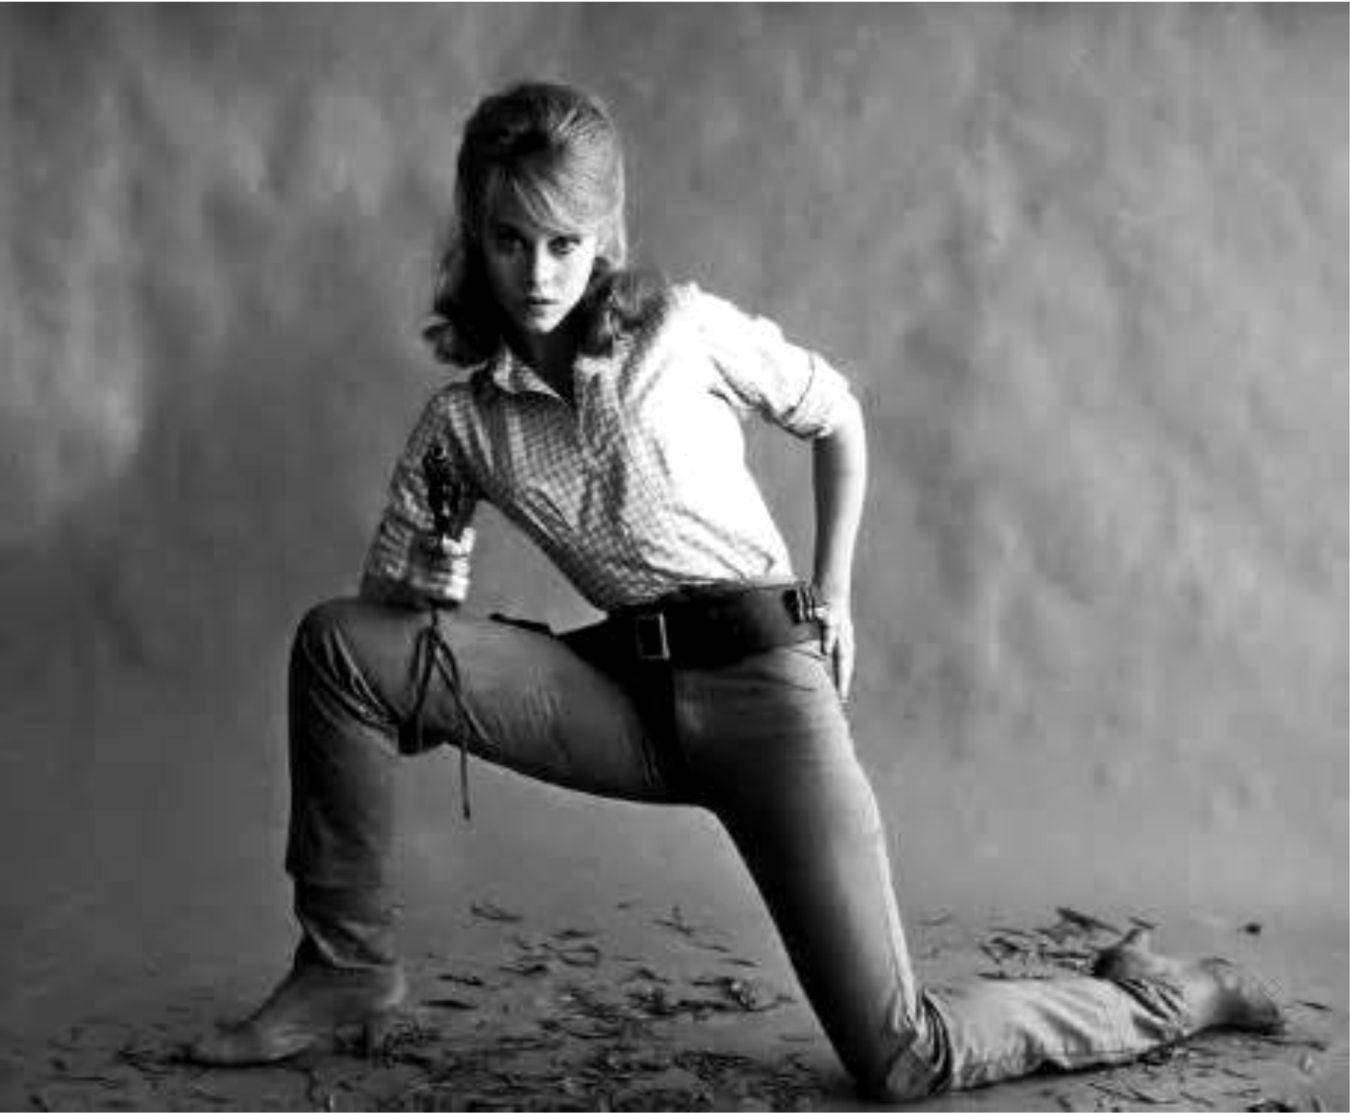 Actrizestadounidense Jane Fonda Modelando En Monocromo. Fondo de pantalla